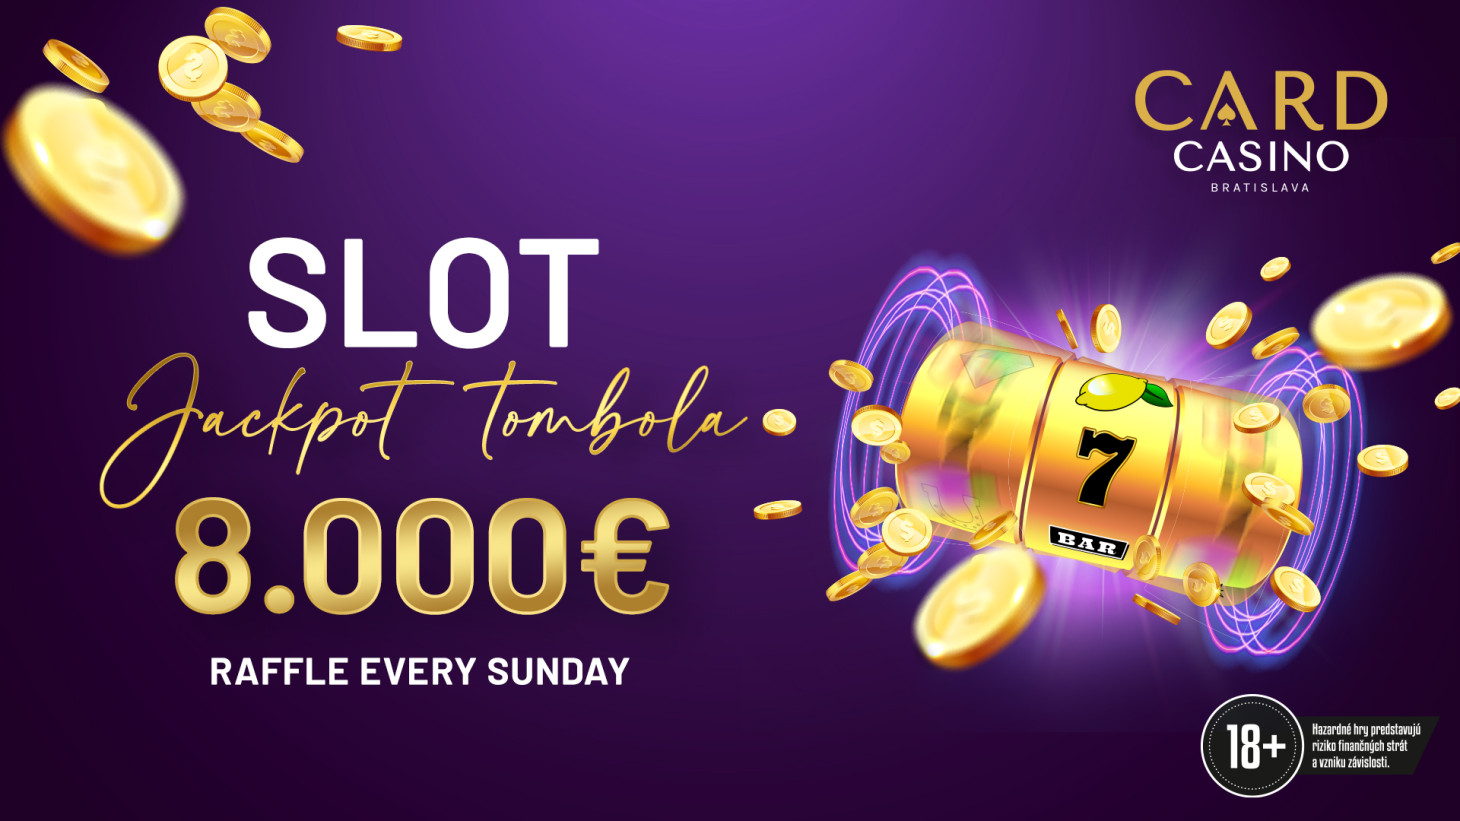 Februar voller Geld. Die Slot-Jackpot-Verlosung bringt ein Spiel von 8000 EUR!